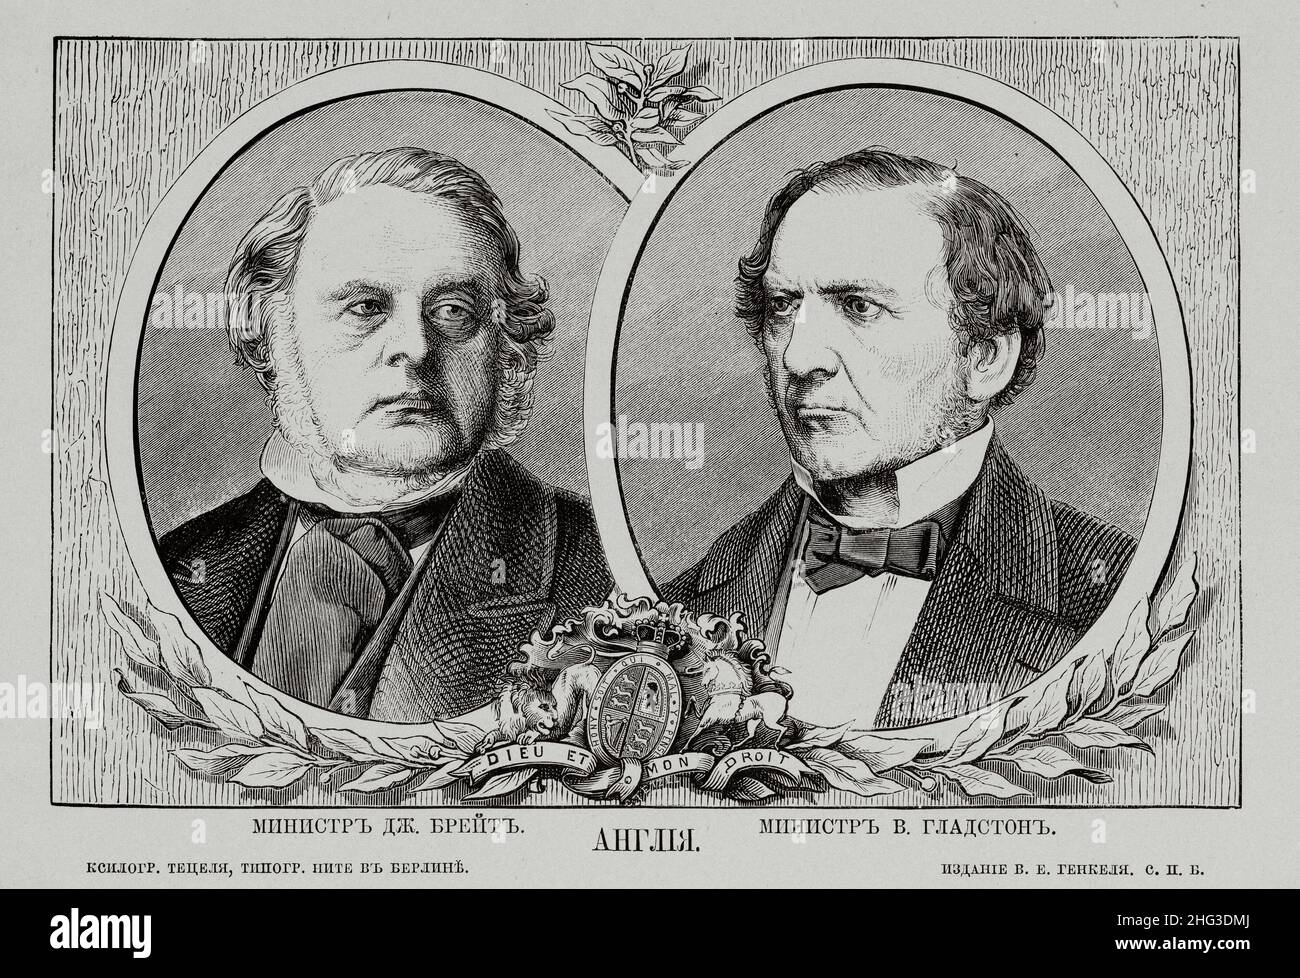 Grabado ruso de las principales figuras políticas de Inglaterra del siglo 19th. 1869-1870, de C. Tetzel (Ca 1850-1870) – artista gráfico. Retratos Foto de stock